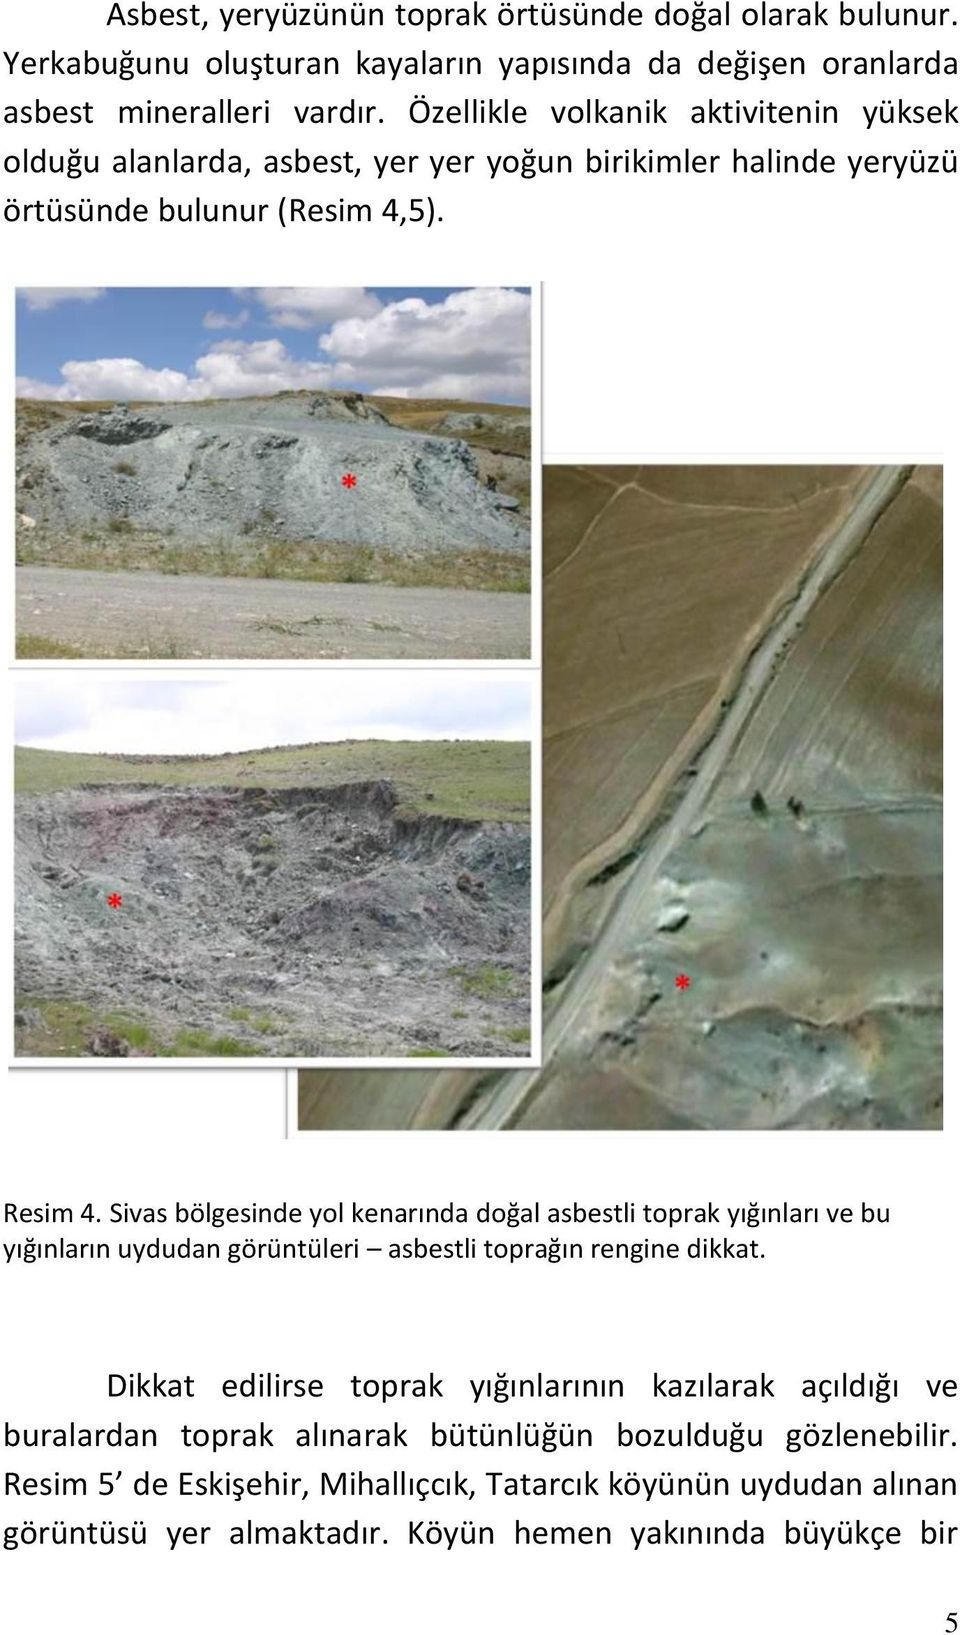 Sivas bölgesinde yol kenarında doğal asbestli toprak yığınları ve bu yığınların uydudan görüntüleri asbestli toprağın rengine dikkat.